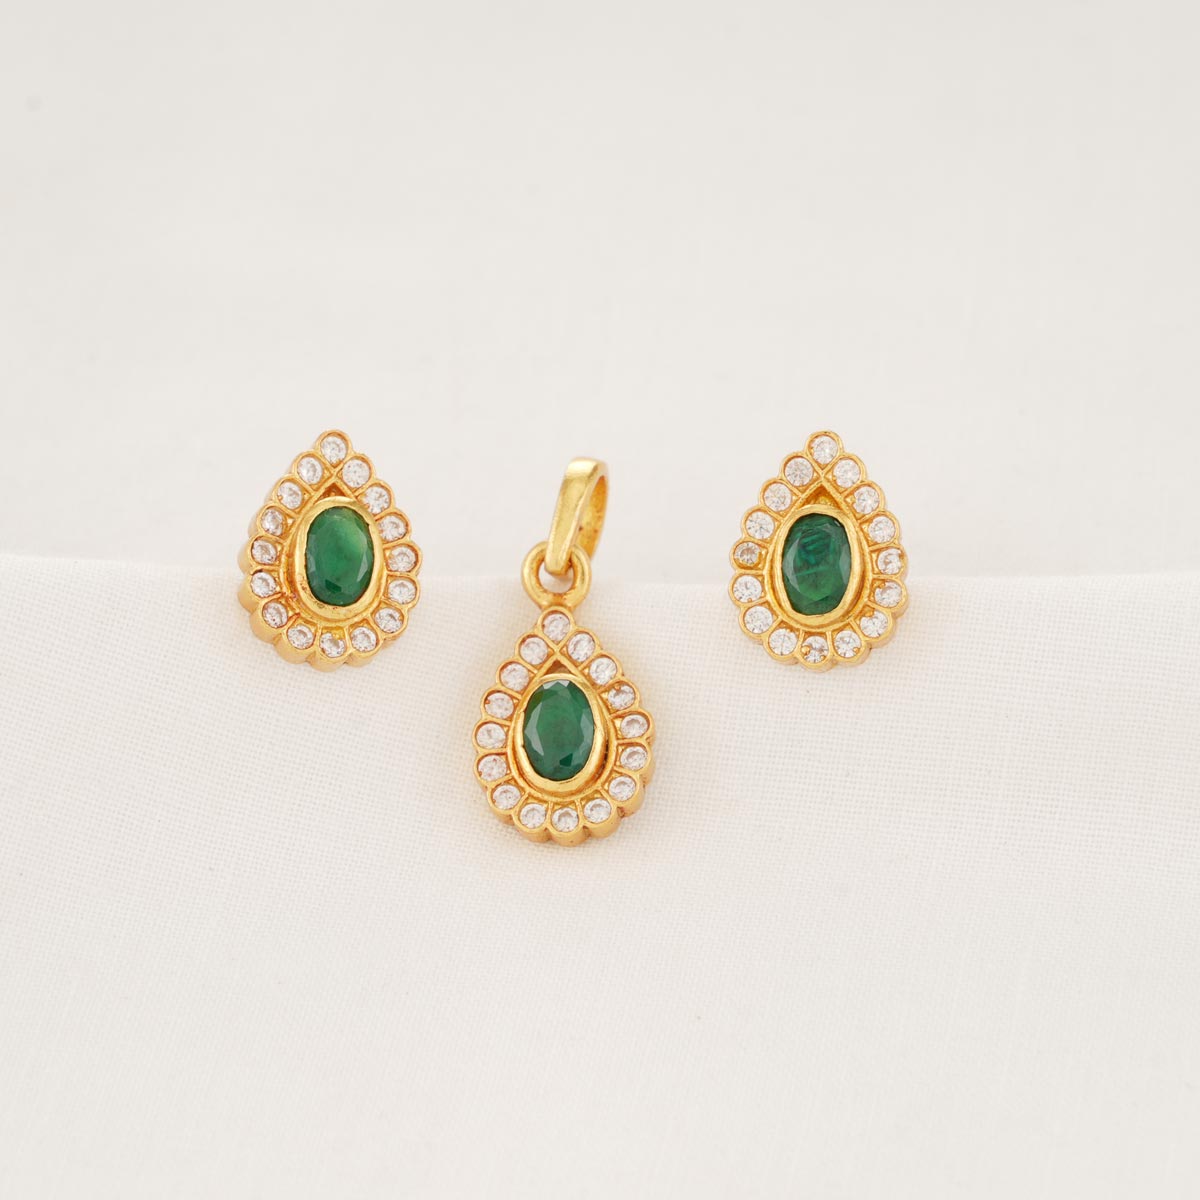 Buy 50+ Men's Earrings Online | BlueStone.com - India's #1 Online Jewellery  Brand